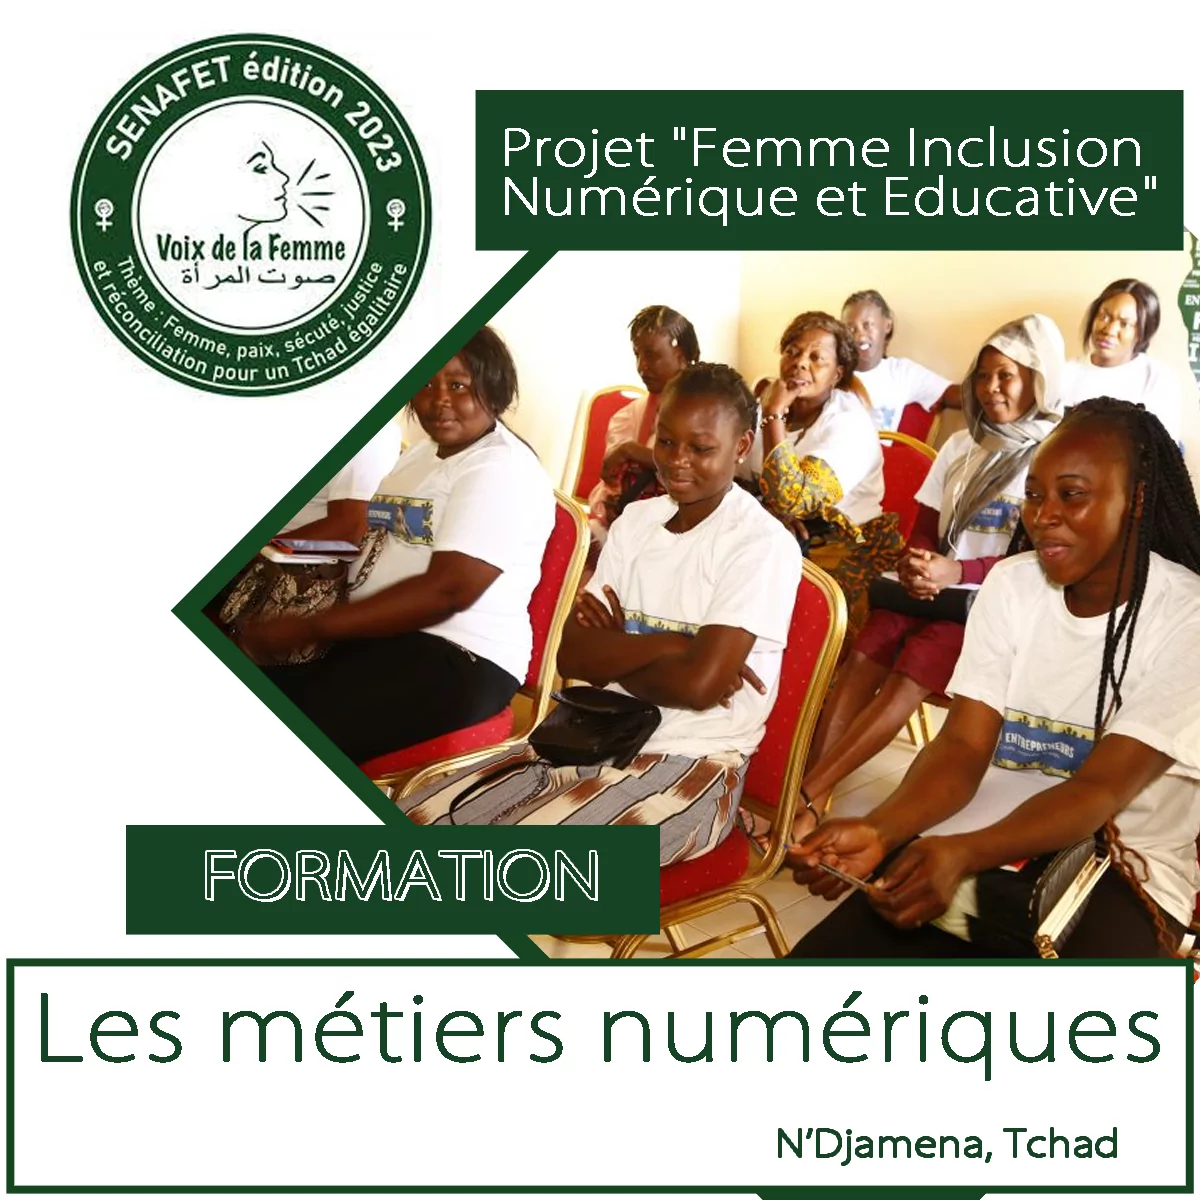 L’ONG Voix de la Femme lance un avis d’appel à candidature à l’intention des femmes pour une formation sur les métiers numériques dans le cadre le Projet FINE ” Femme Inclusion Numérique et Educative”, N’Djamena, Tchad